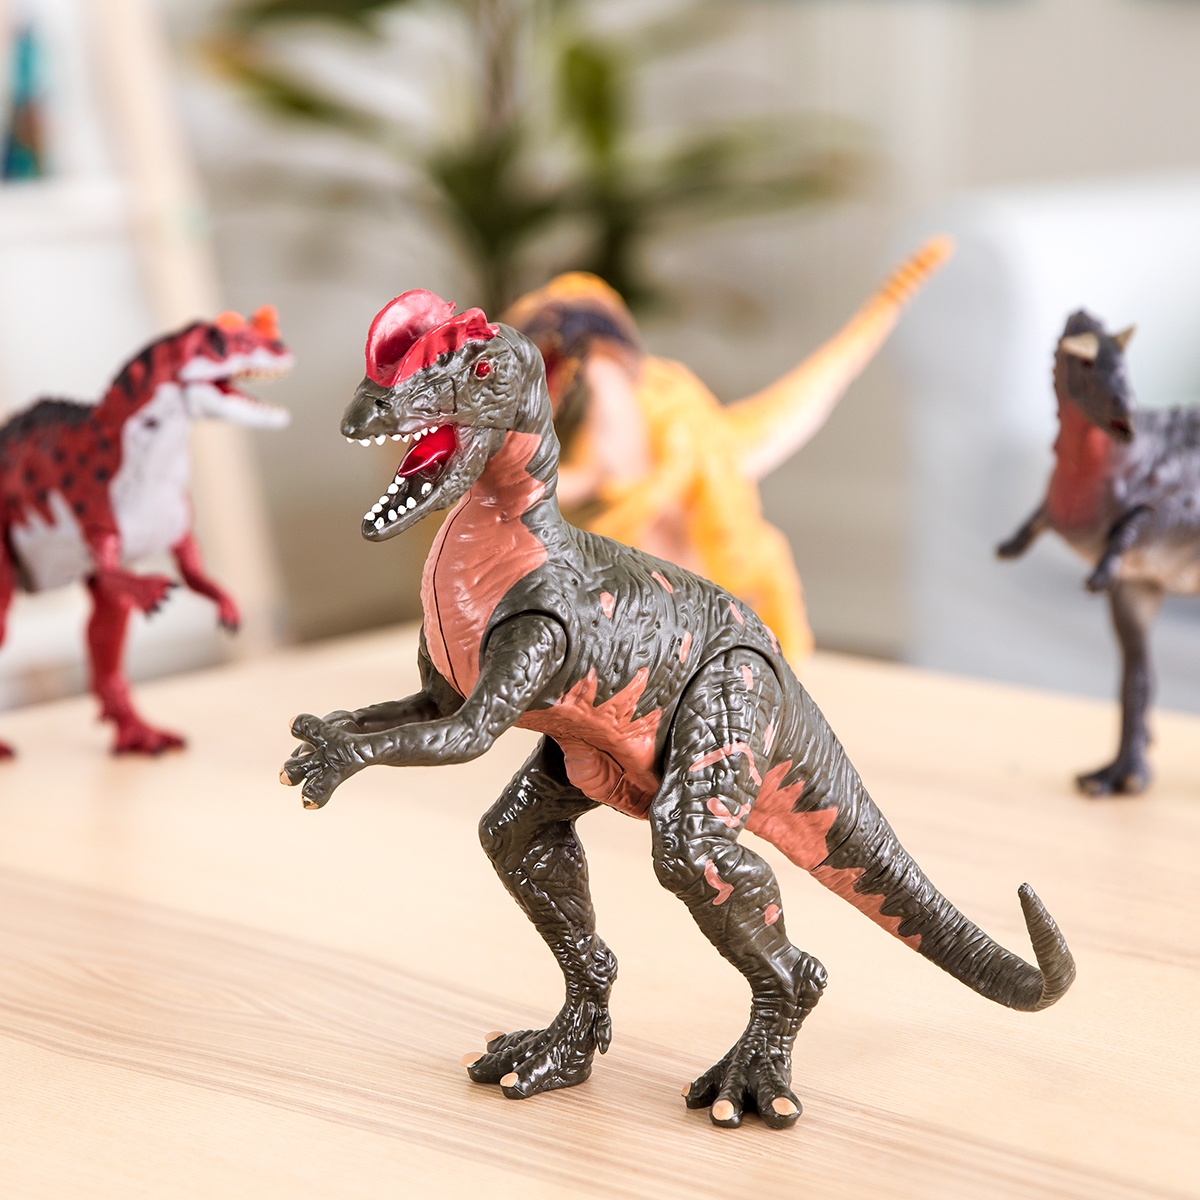 Dinosauro giocattolo Terra Dilophosaurus Wetherilli